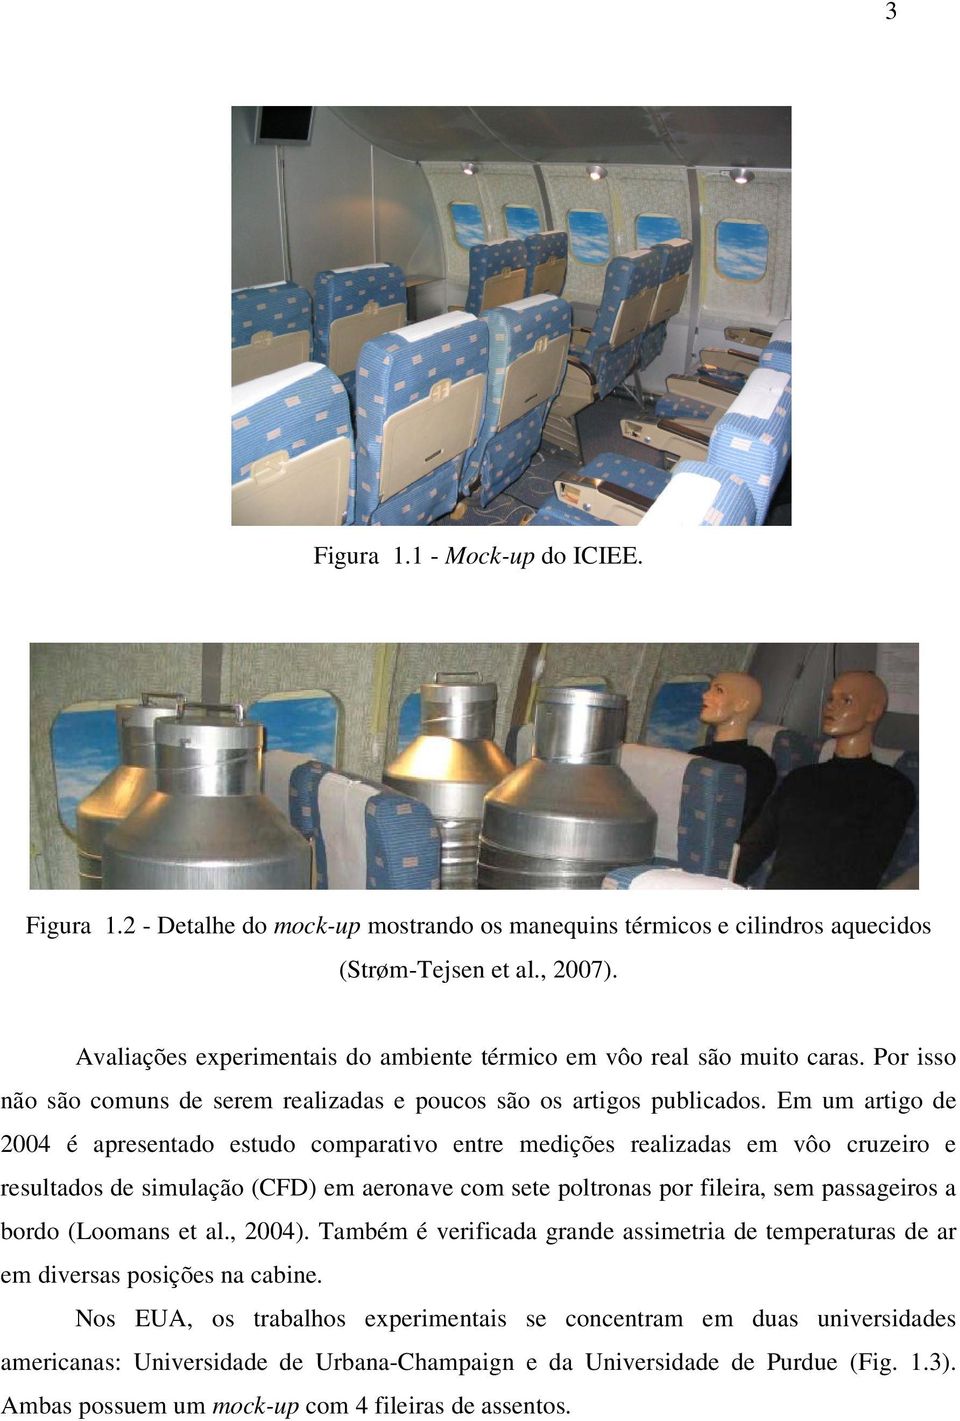 Em um artigo de 2004 é apresentado estudo comparativo entre medições realizadas em vôo cruzeiro e resultados de simulação (CFD) em aeronave com sete poltronas por fileira, sem passageiros a bordo